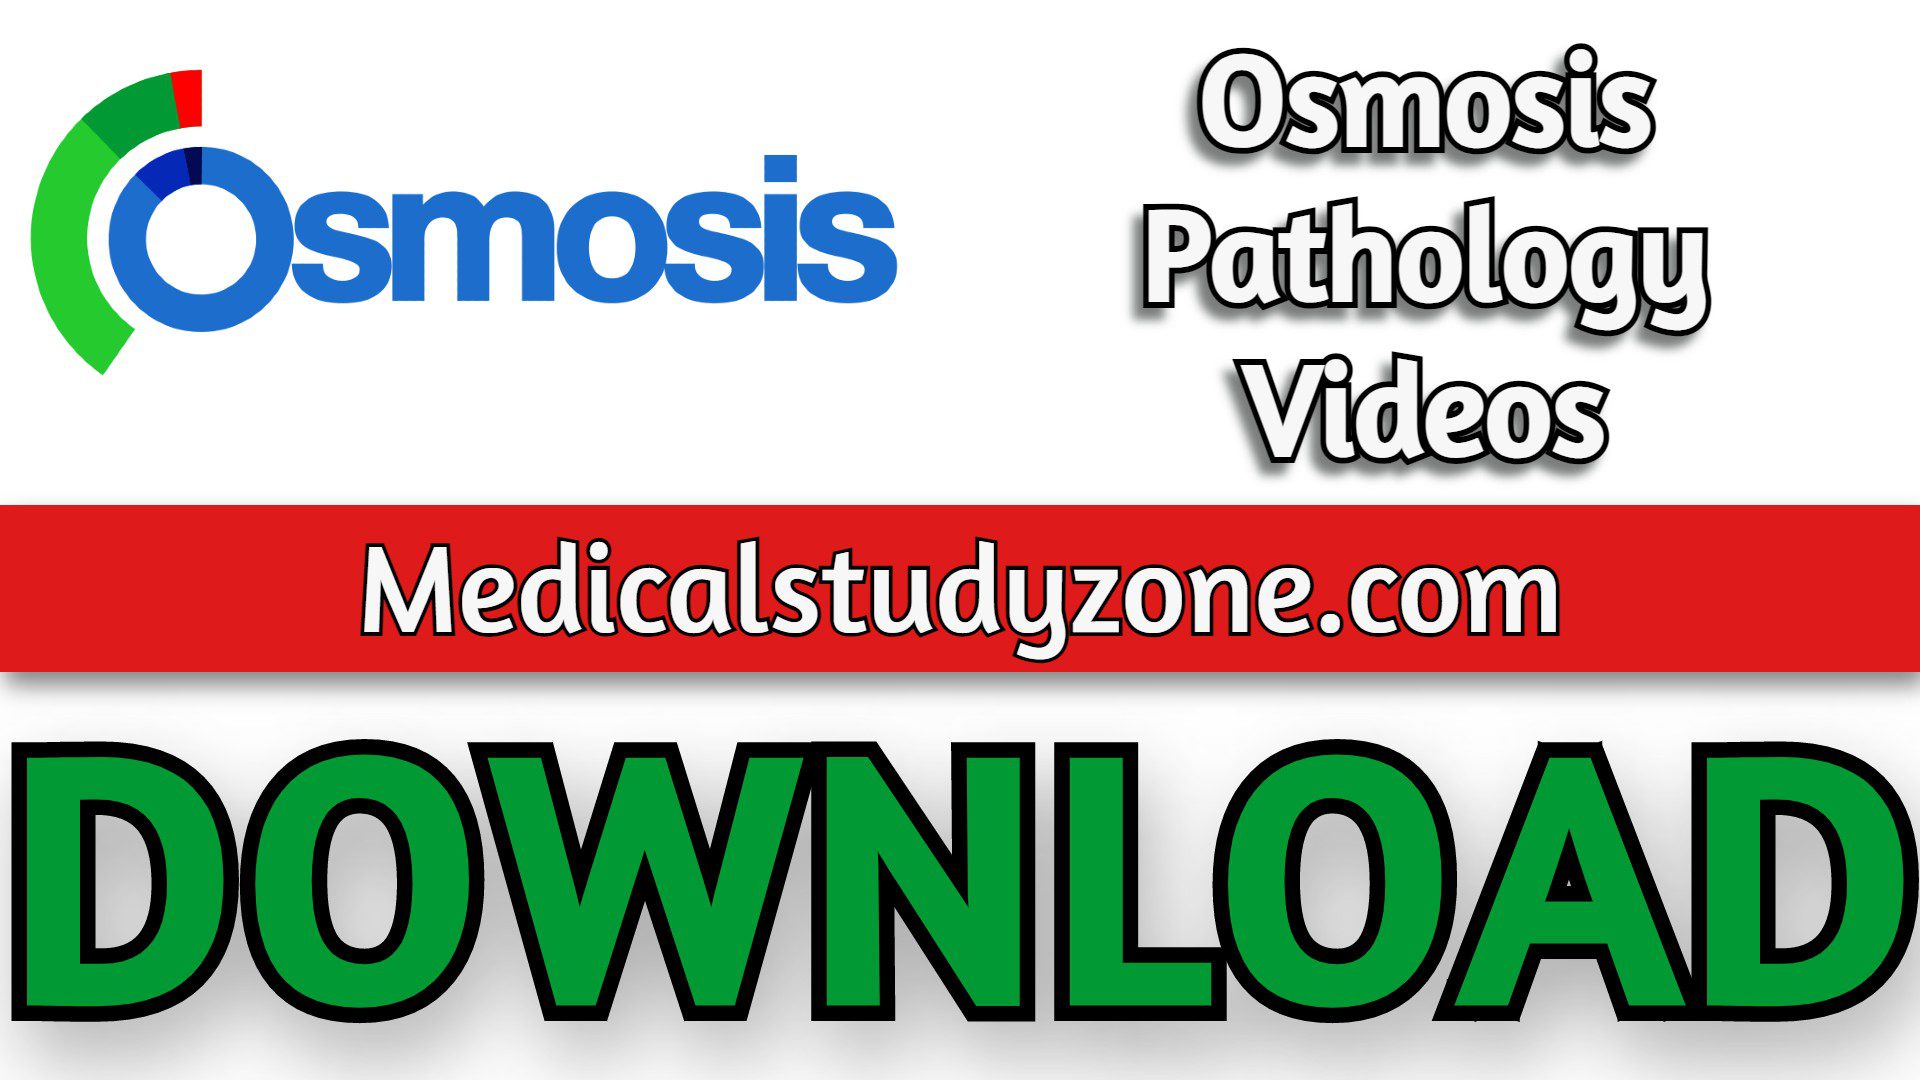 Osmosis Pathology Videos 2022 Free Download